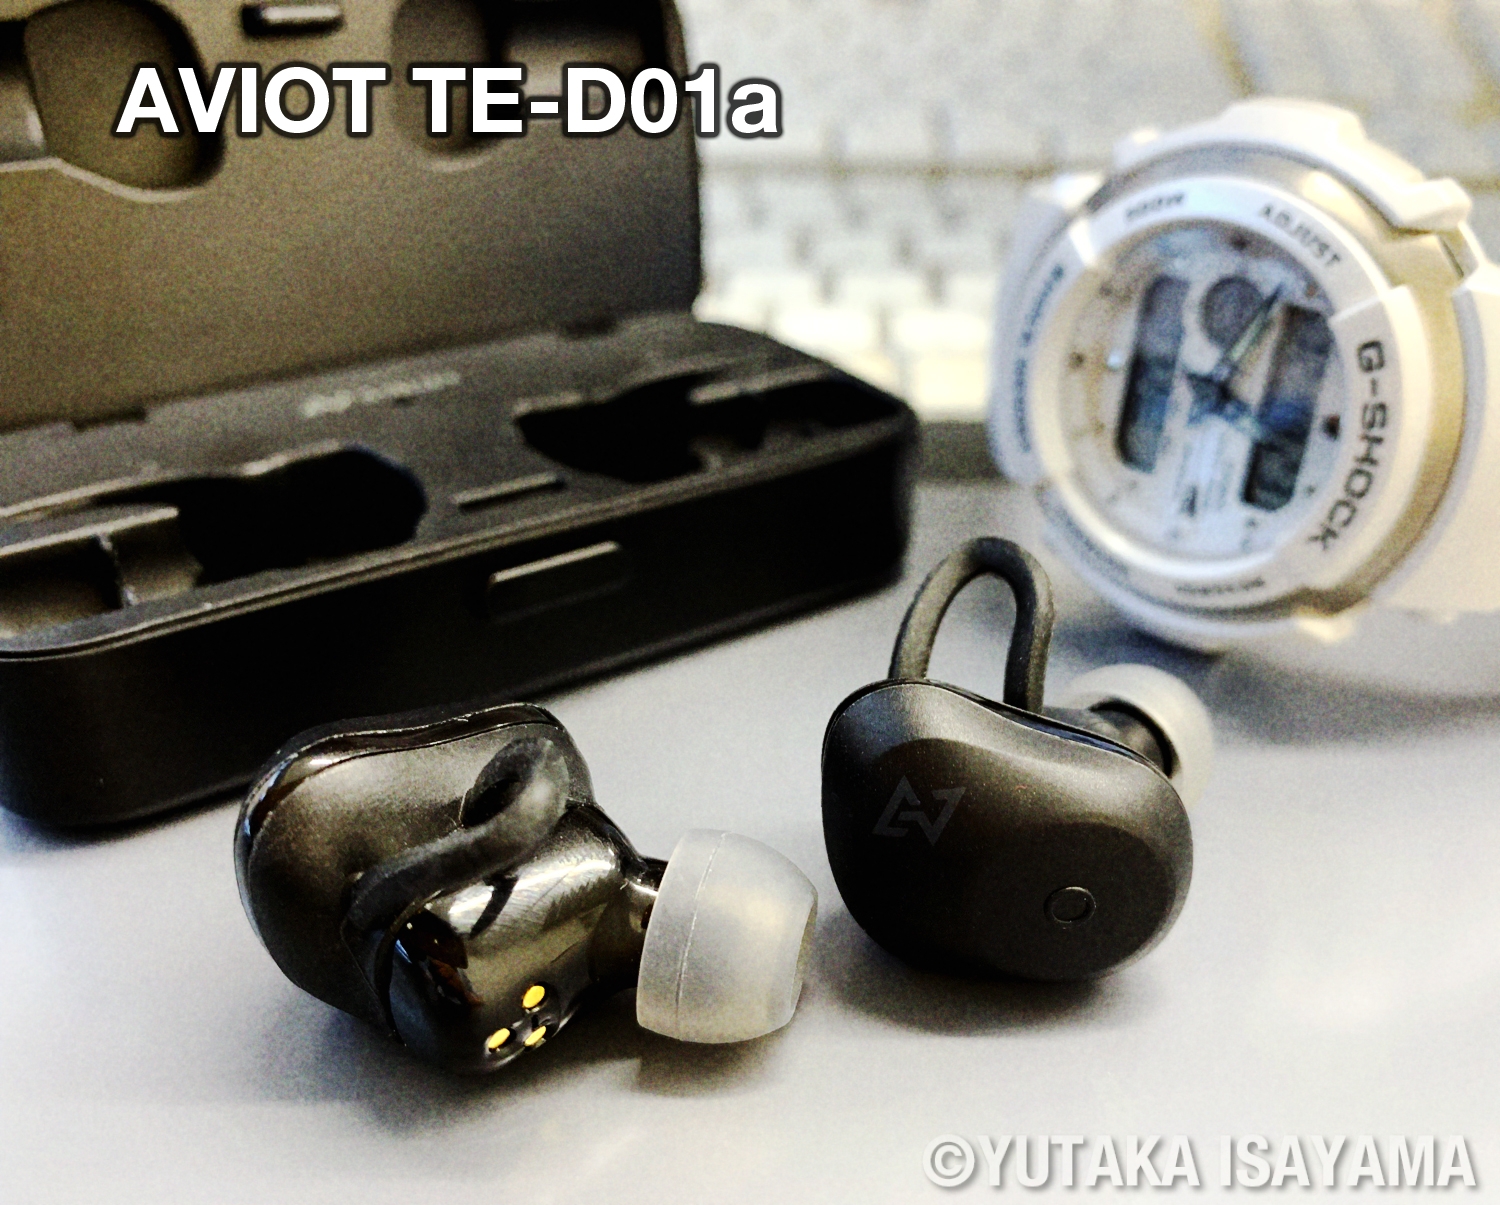 【製品レビュー】AVIOT TE-D01a Bluetoothイヤホン